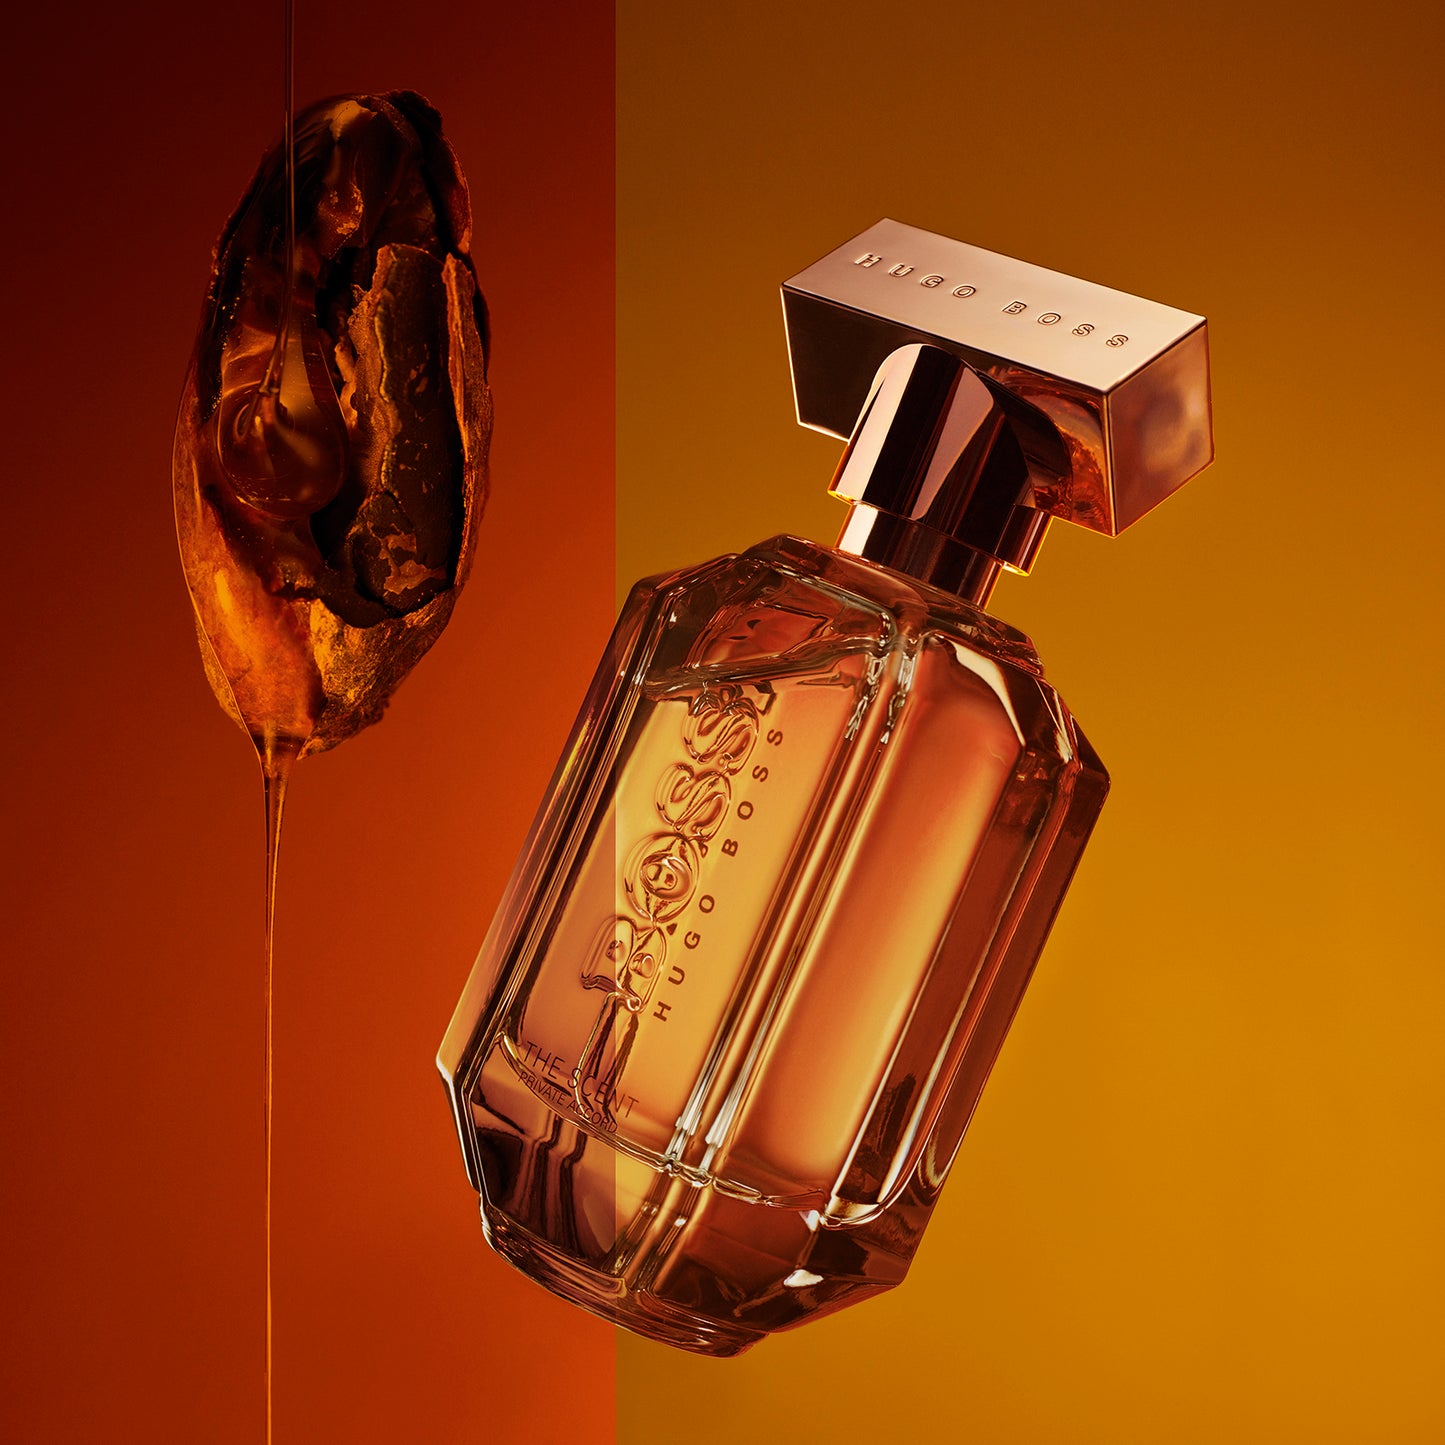 The Scent Private Accord Eau de Parfum for Women - Perfume Planet 